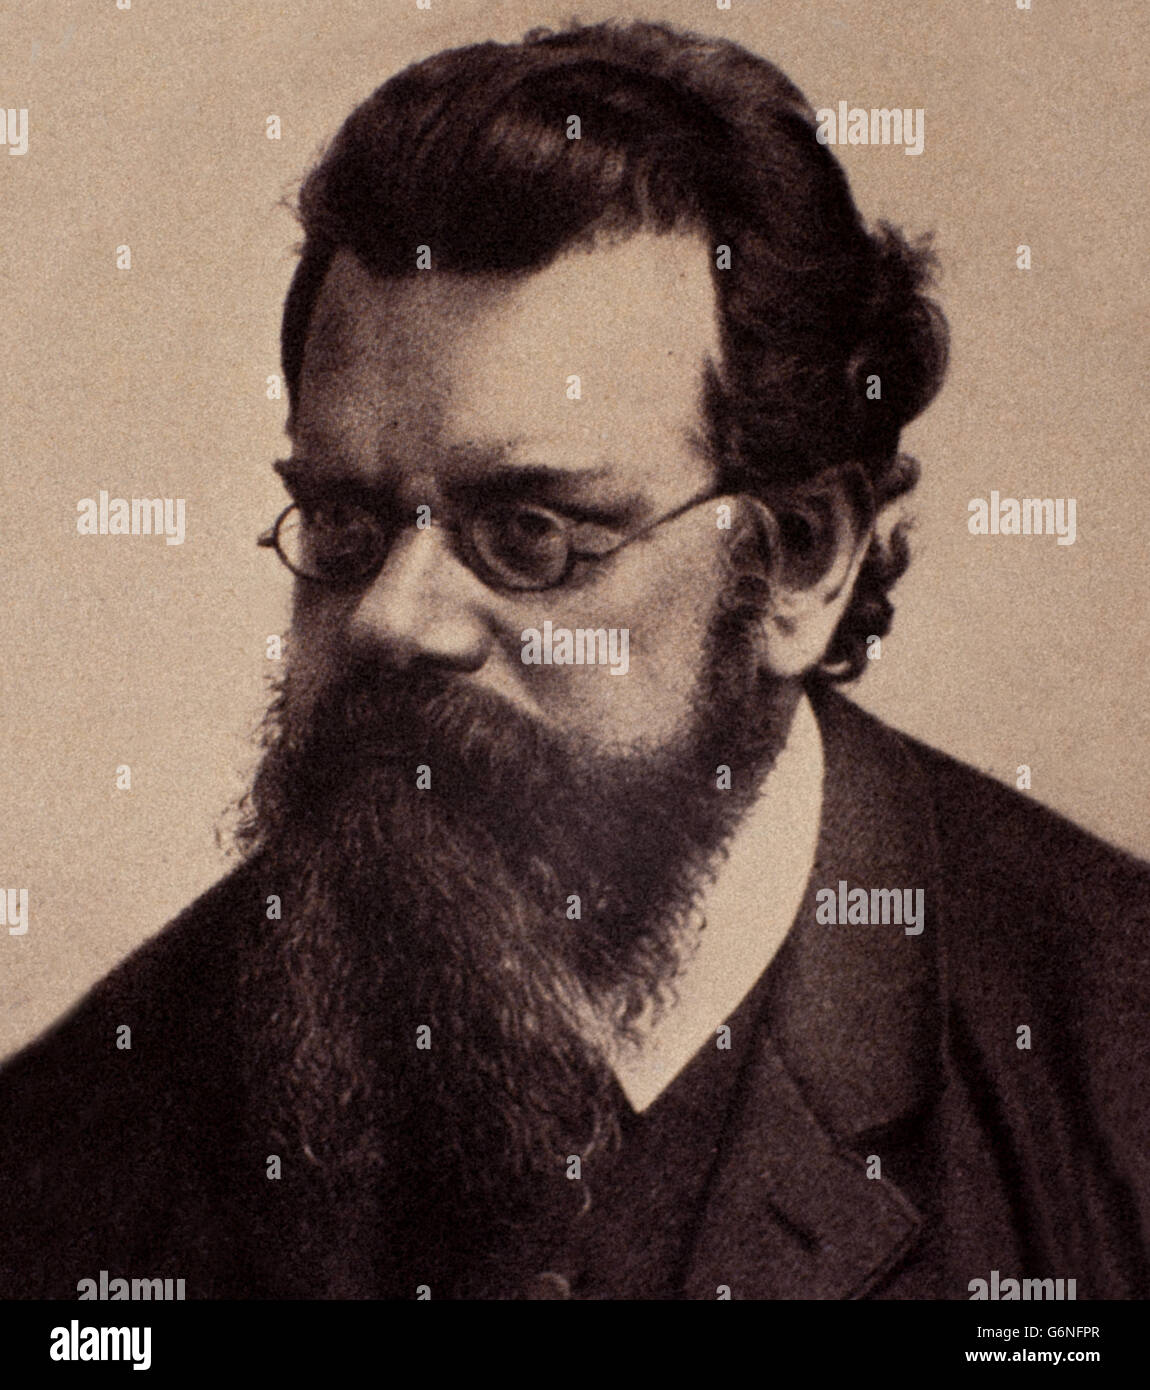 Eduard Ludwig Boltzmann (Viena, 20 de febrero de 1844 - Duino, 5 de septiembre de 1906) fue un físico, matemático y filósofo austriaco. Foto de stock